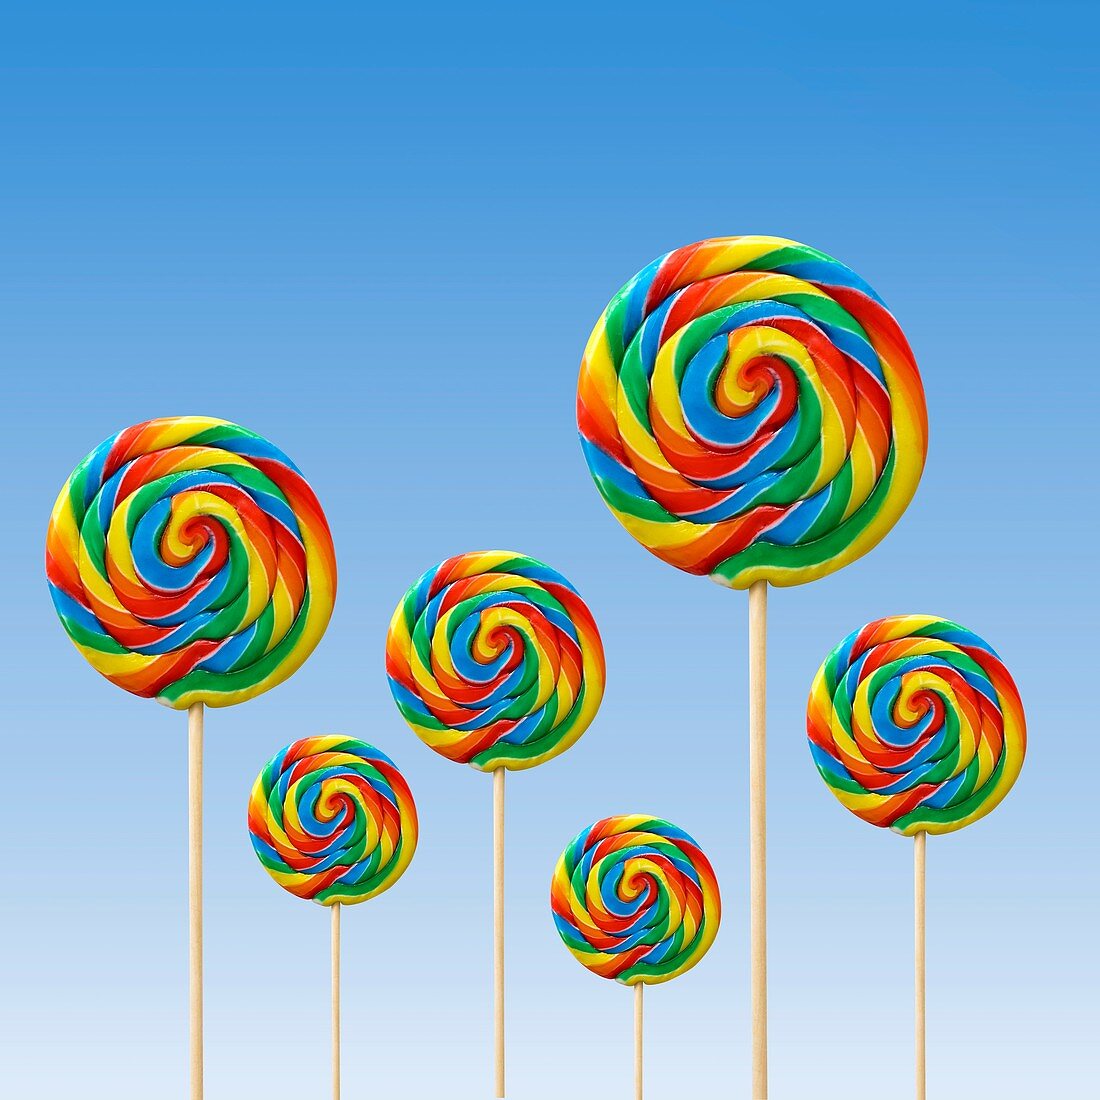 Bright coloured lollipops